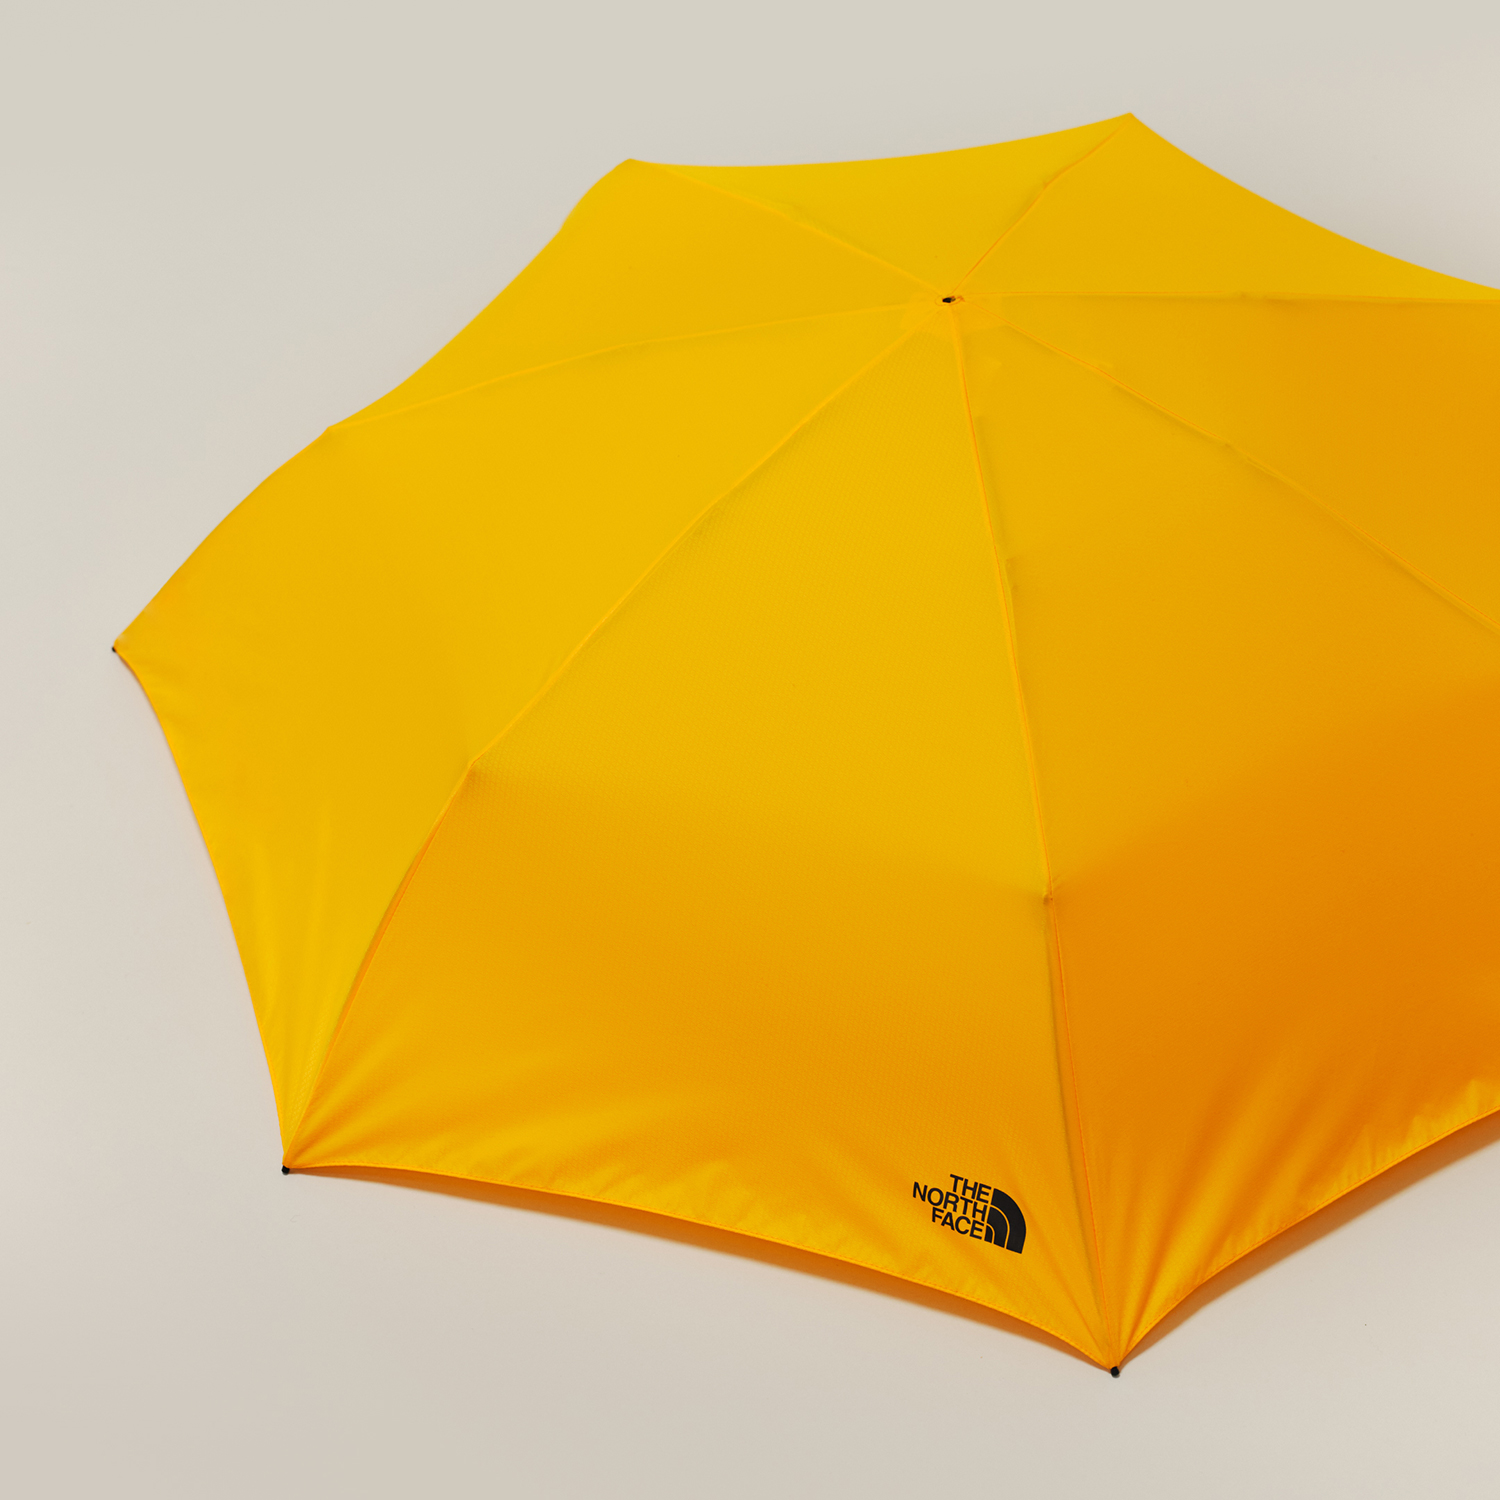 THE NORTH FACEによる初の折りたたみ傘『Module Umbrella』